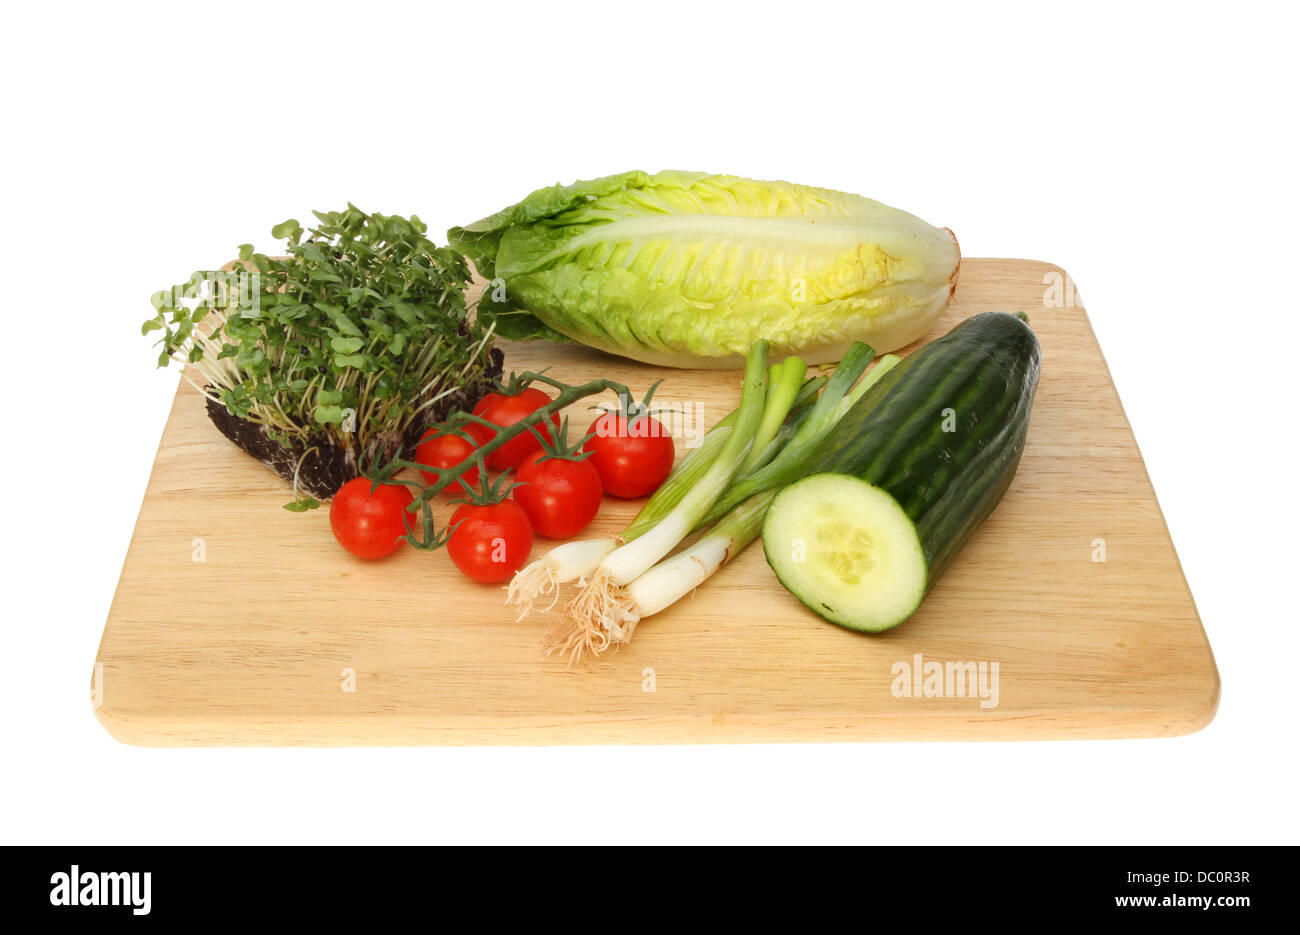 Ingredienti per insalata su una tavola di legno isolata contro uno sfondo bianco Foto Stock